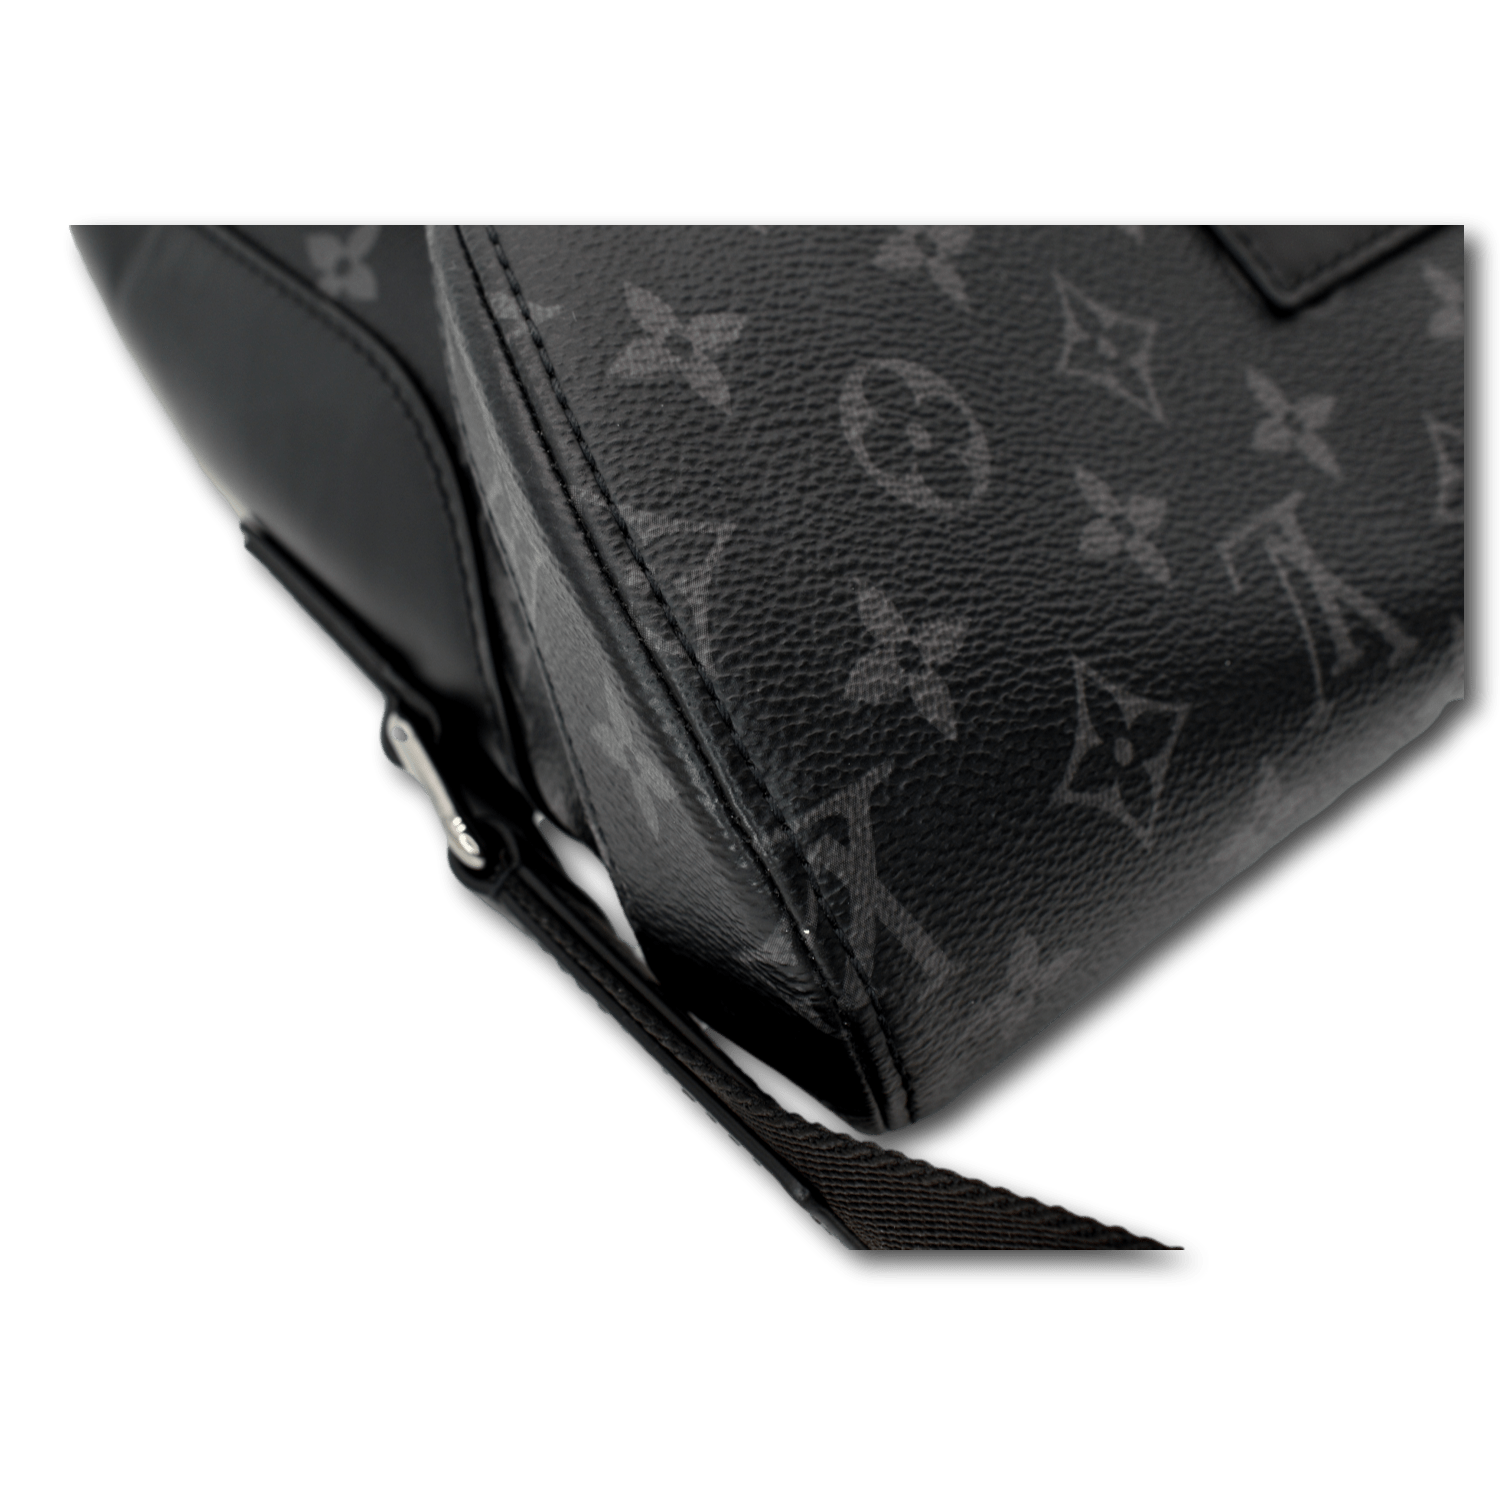 Louis Vuitton Men’s Messenger Voyage Pm Shoulder Bag Monogram Eclipse Black  Gray